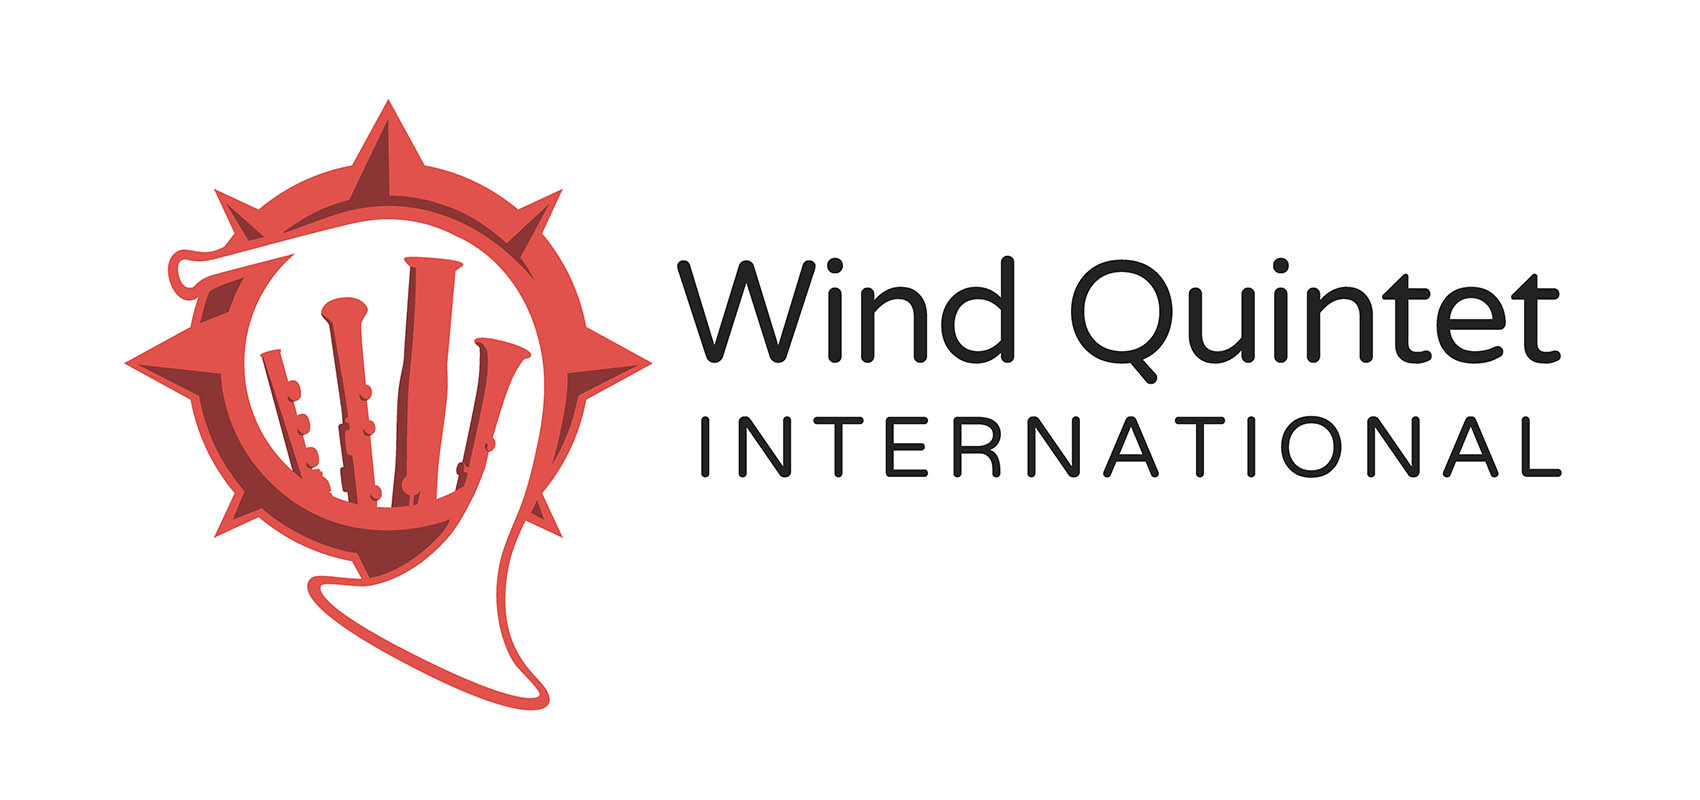 Wind Quintet International